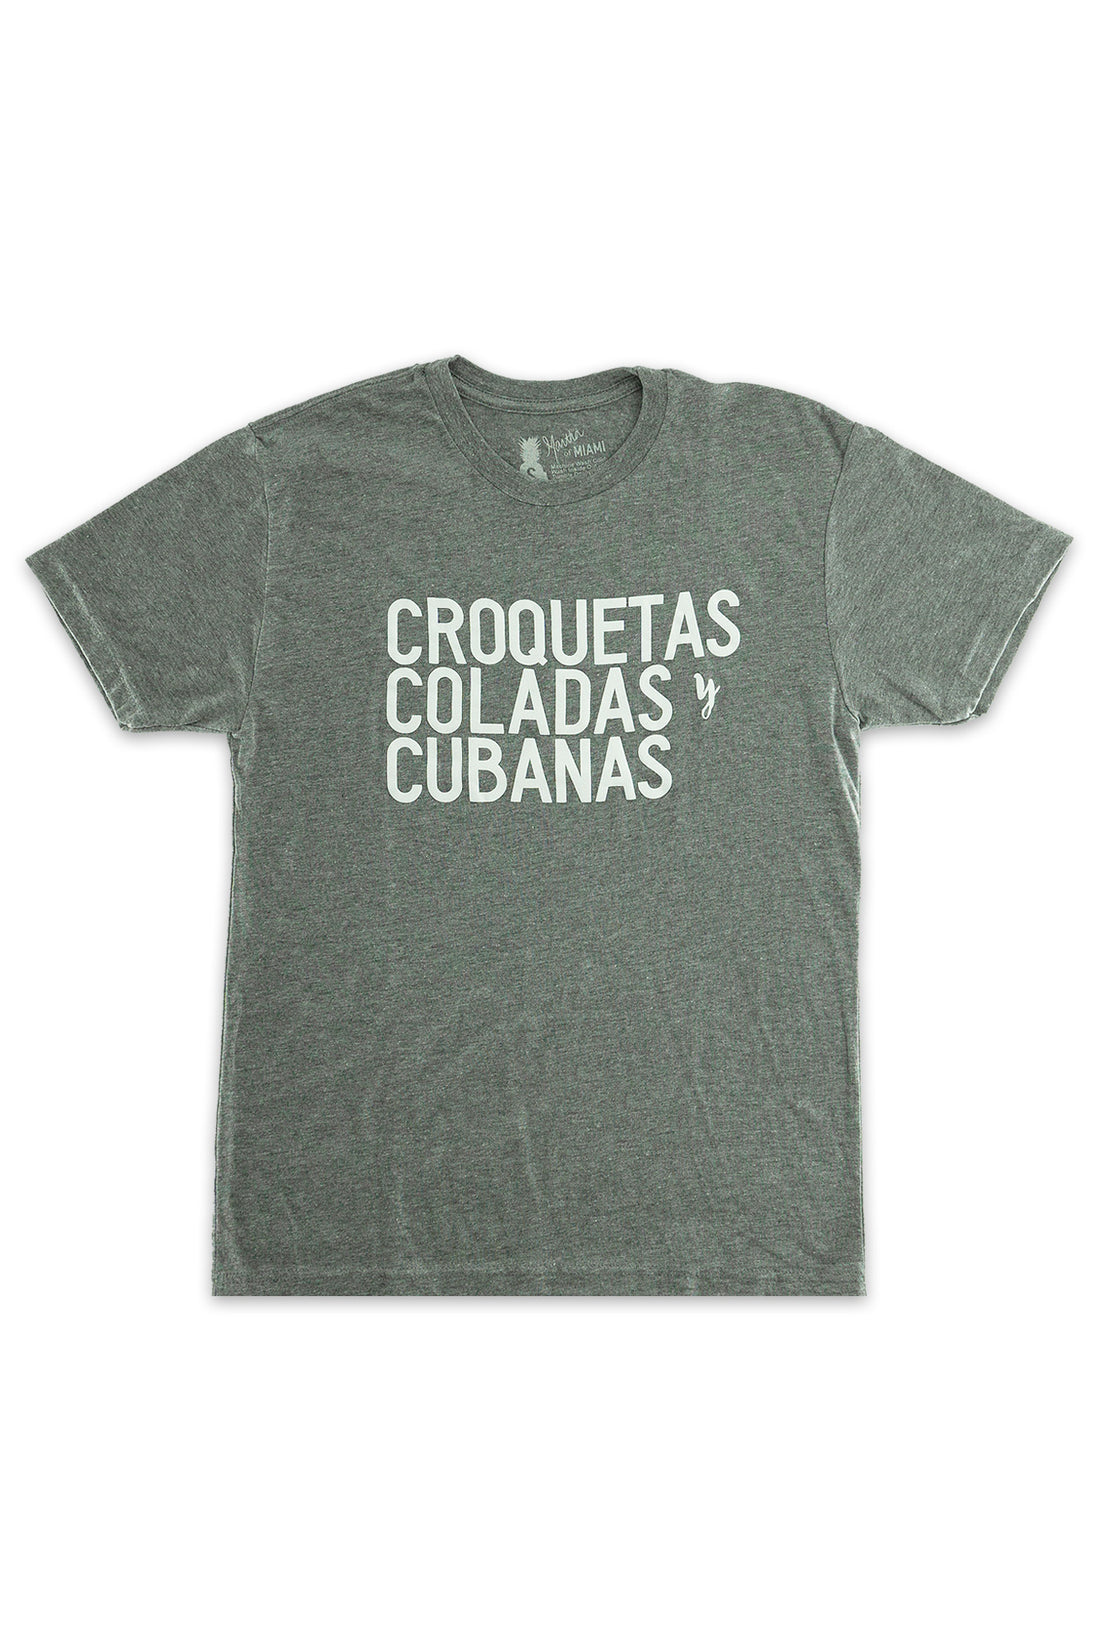 Croquetas, Coladas, y Cubanas T-Shirt - Men